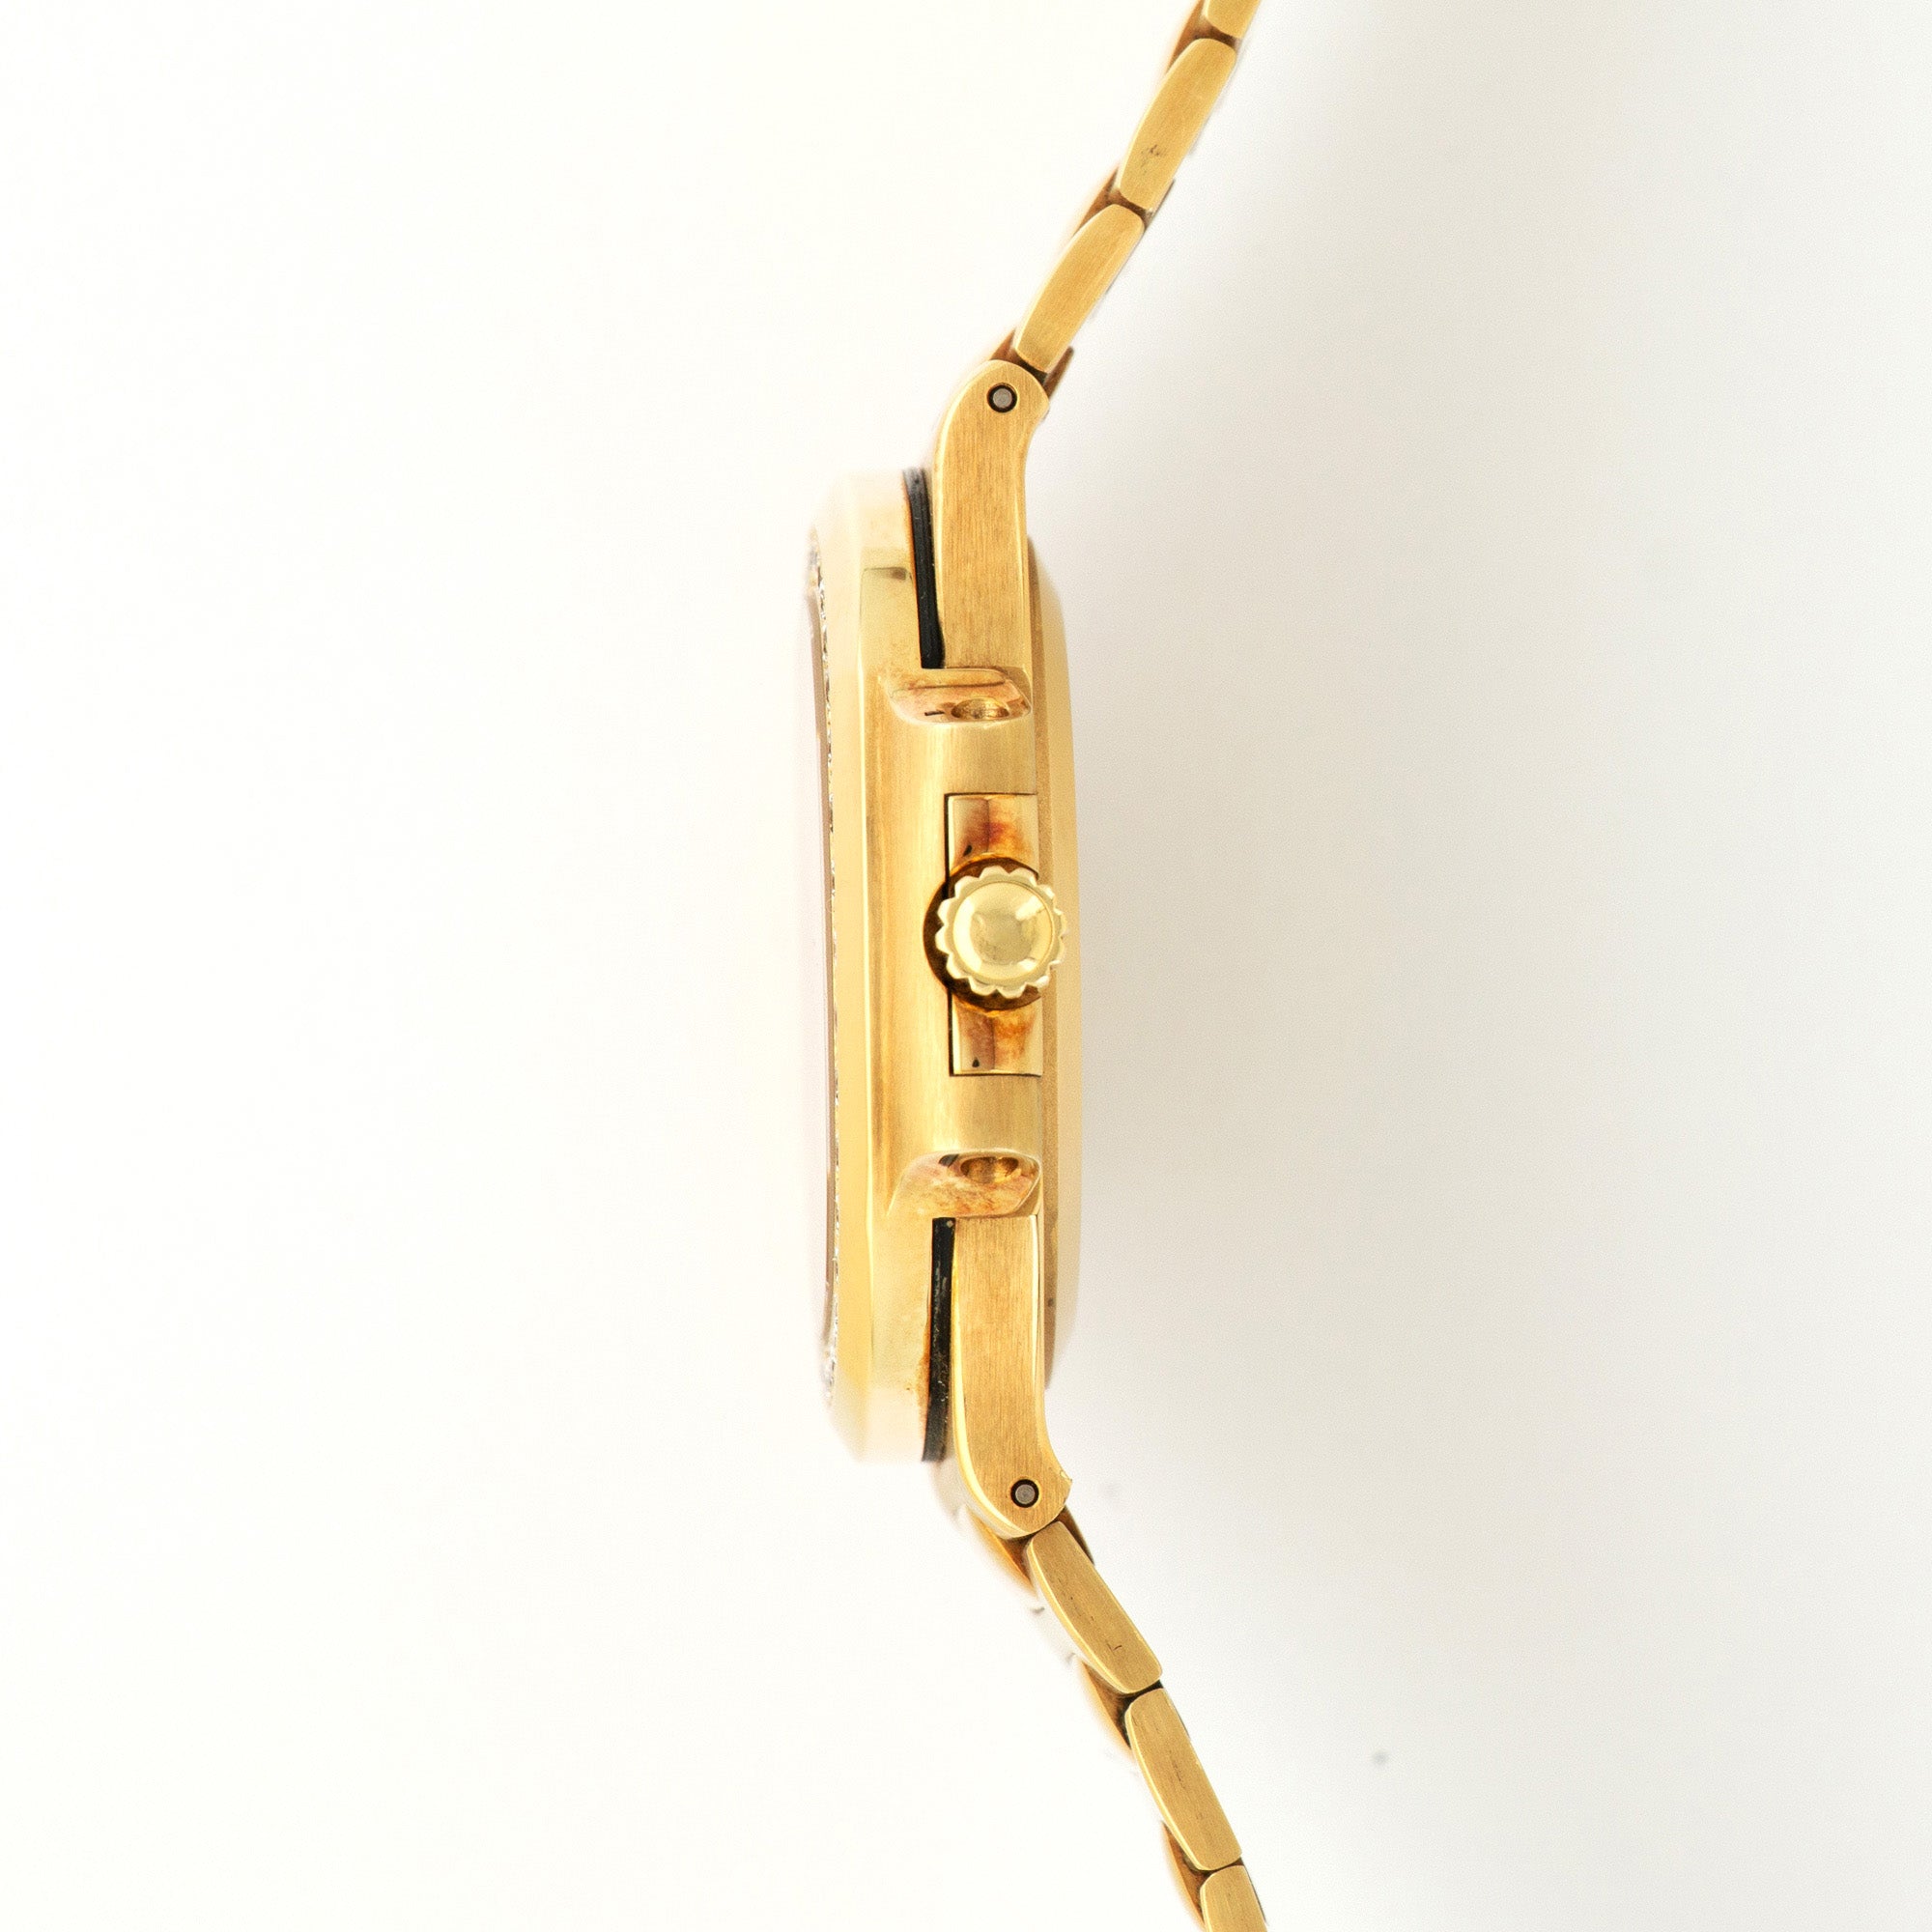 Patek Philippe Yellow Gold Nautilus Diamond &amp; Ruby Watch Ref. 3800